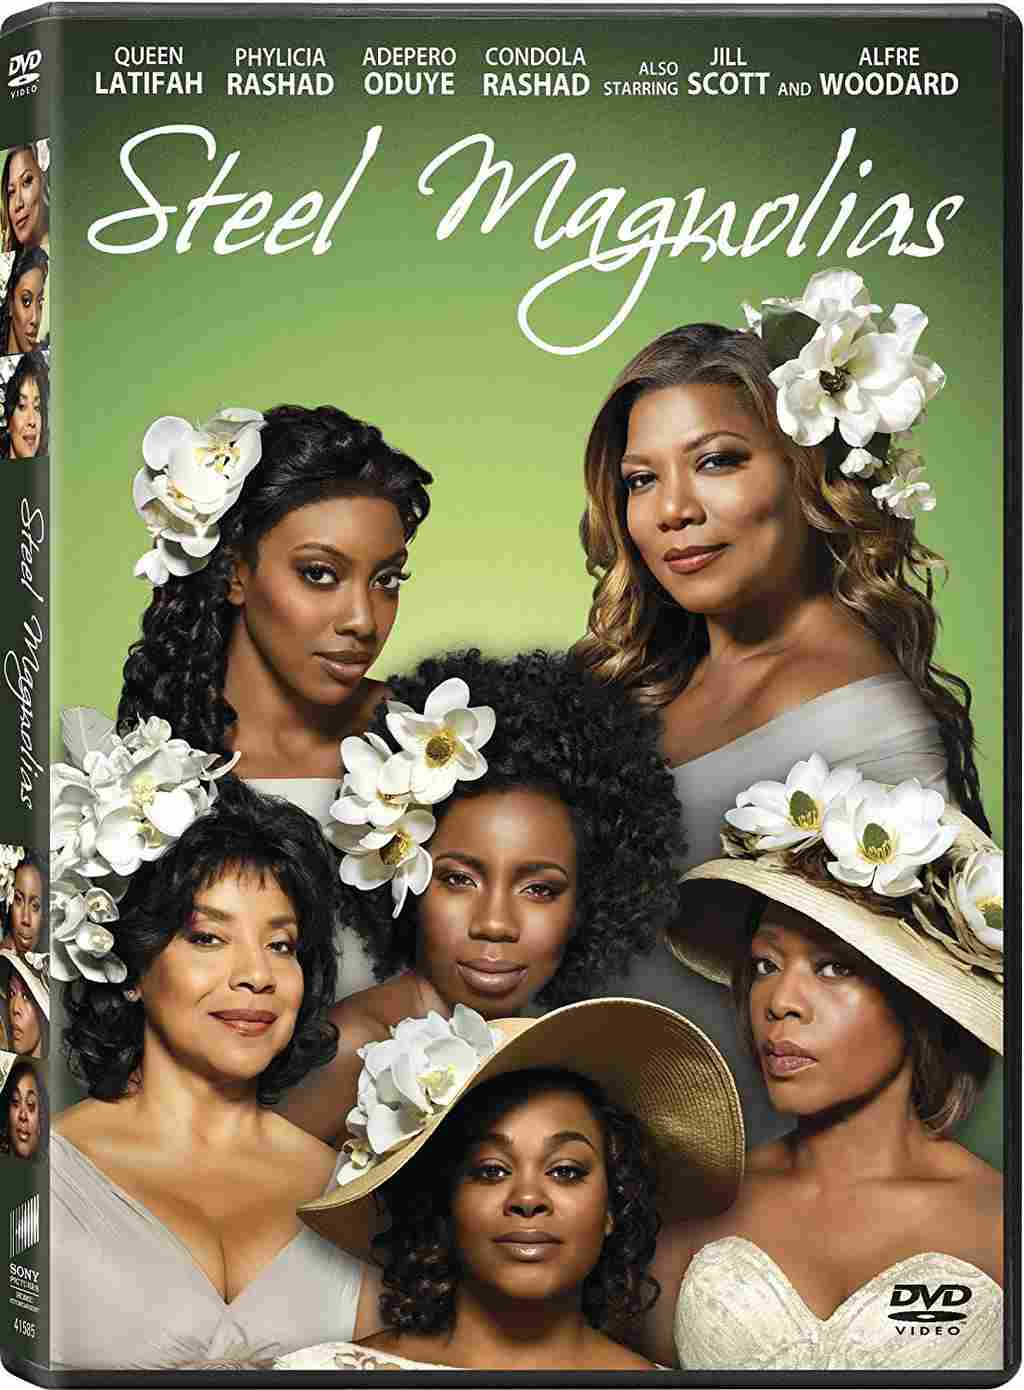 9 Hechos sobre 'Magnolias de acero' - 15 - octubre 6, 2022